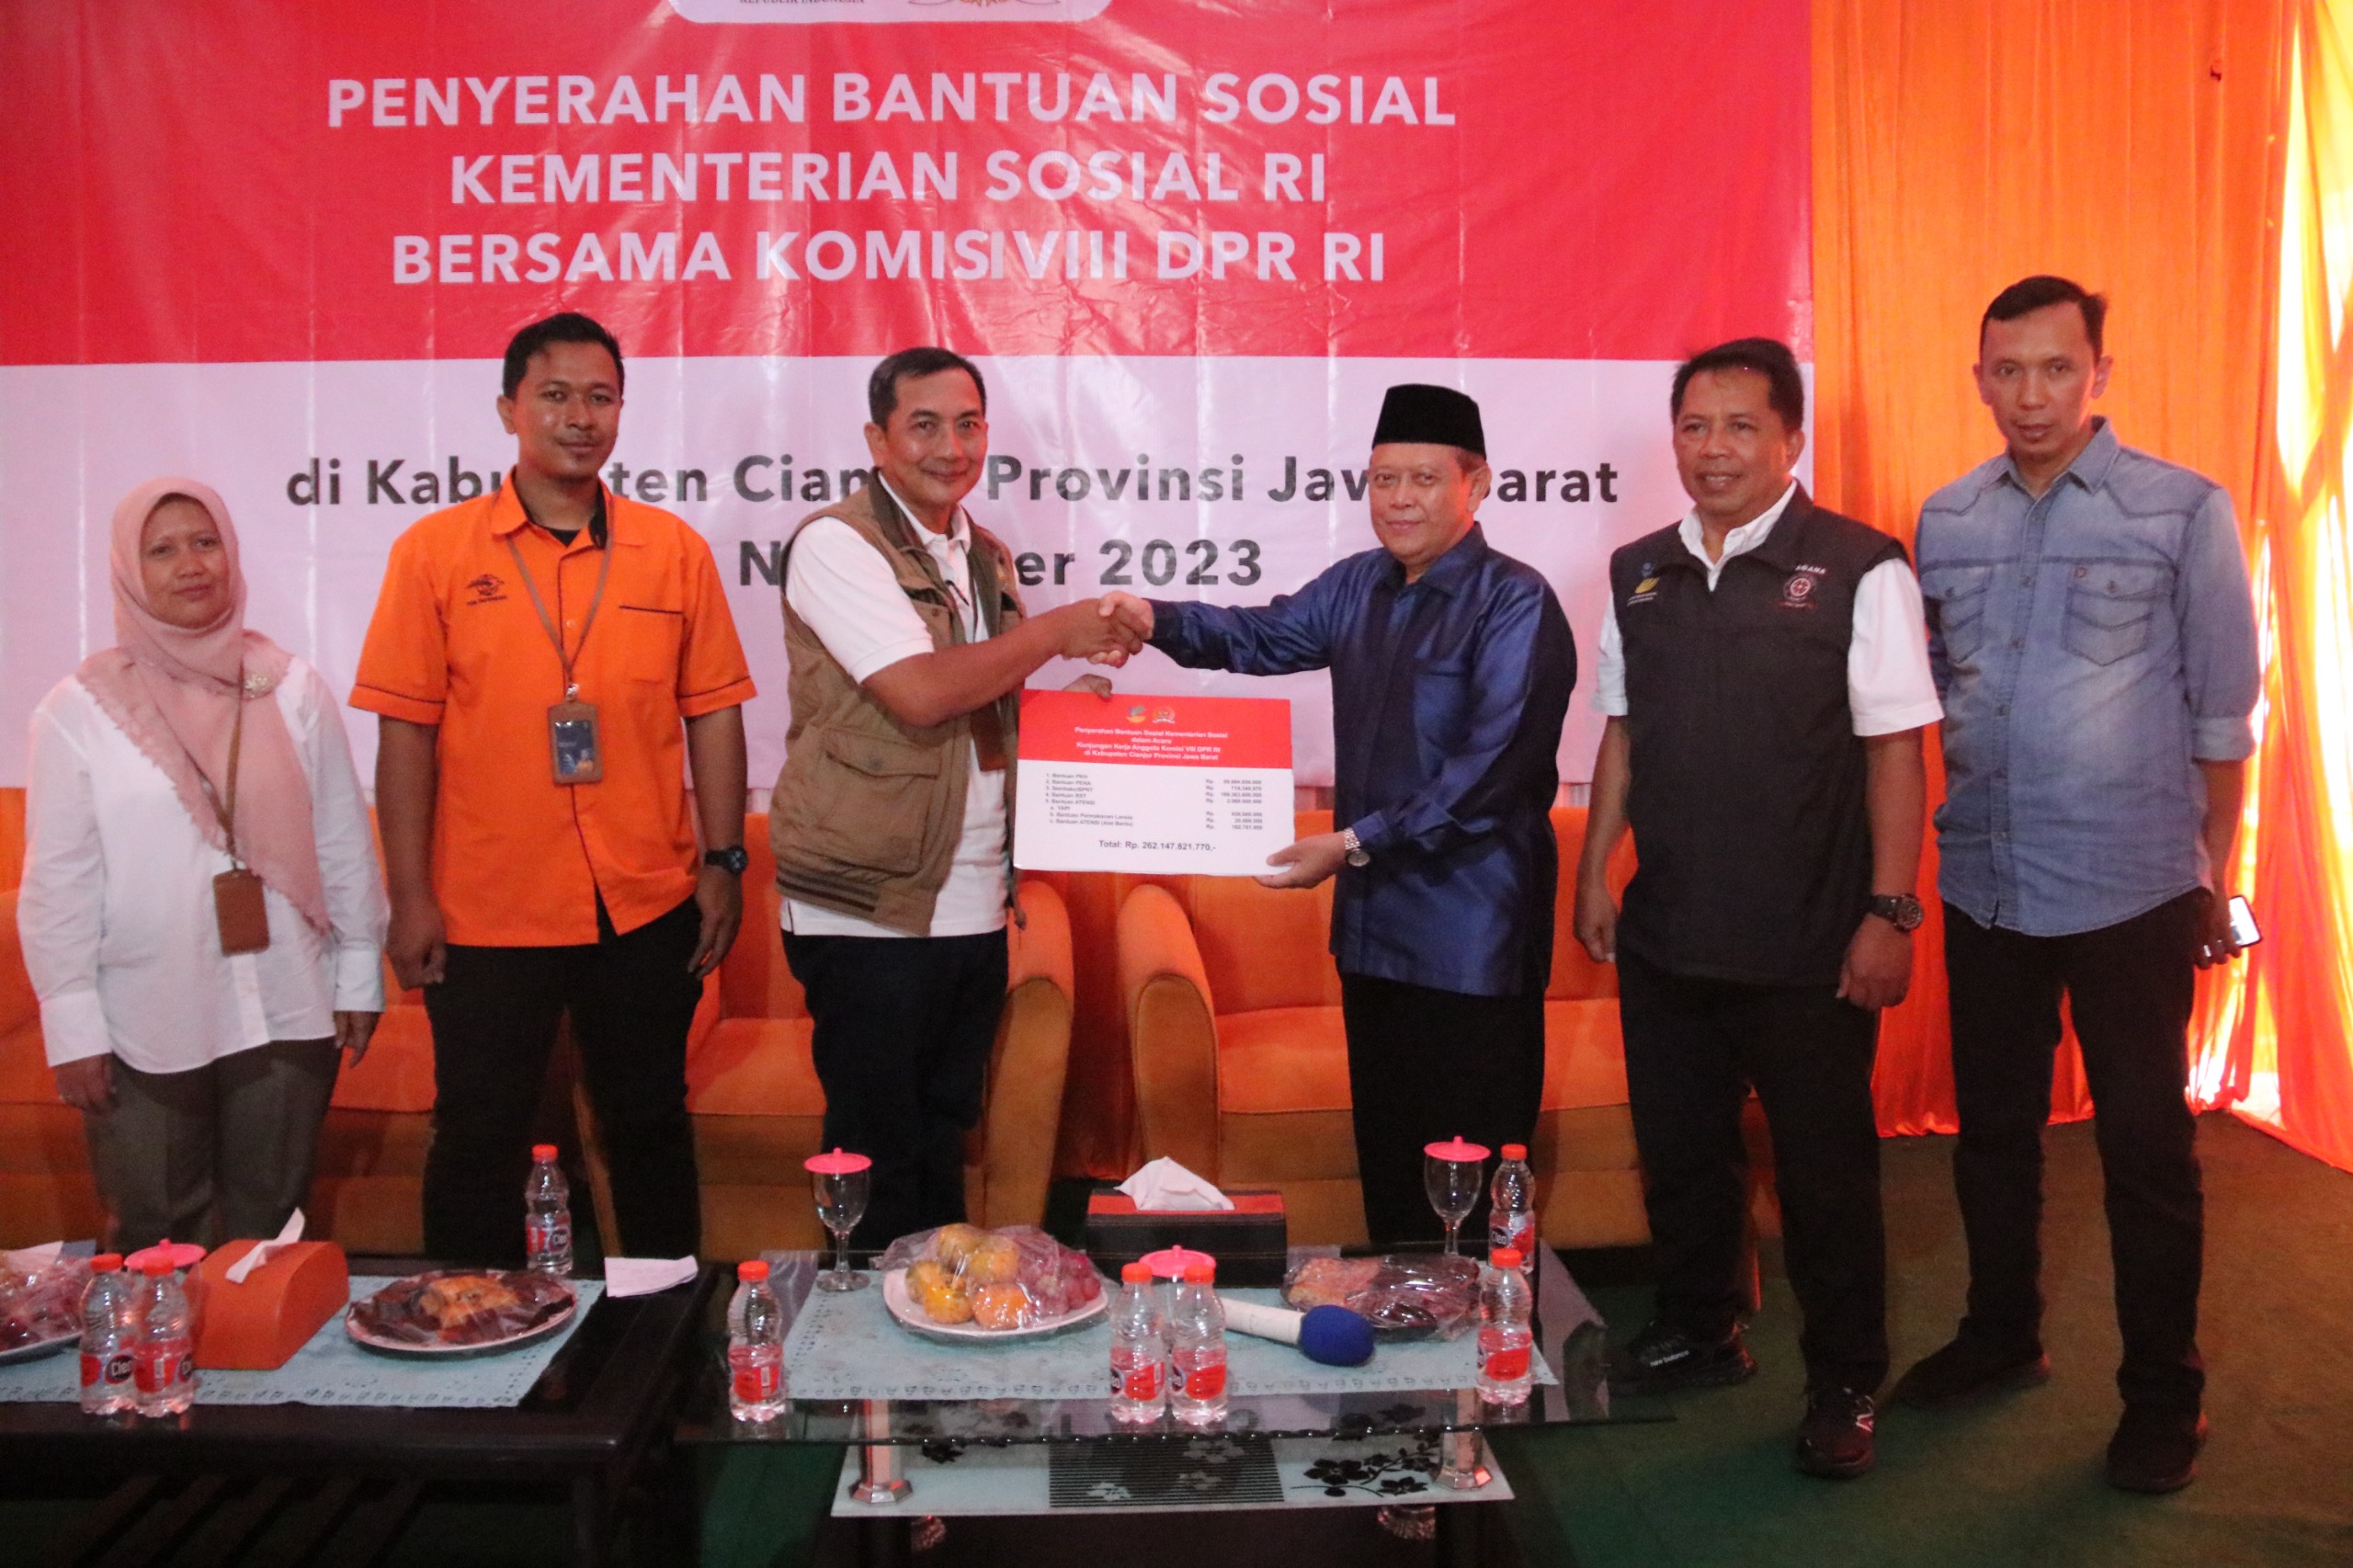 Kemensos Bersama Komisi VIII DPR RI Salurkan Bantuan Sosial di Kabupaten Cianjur